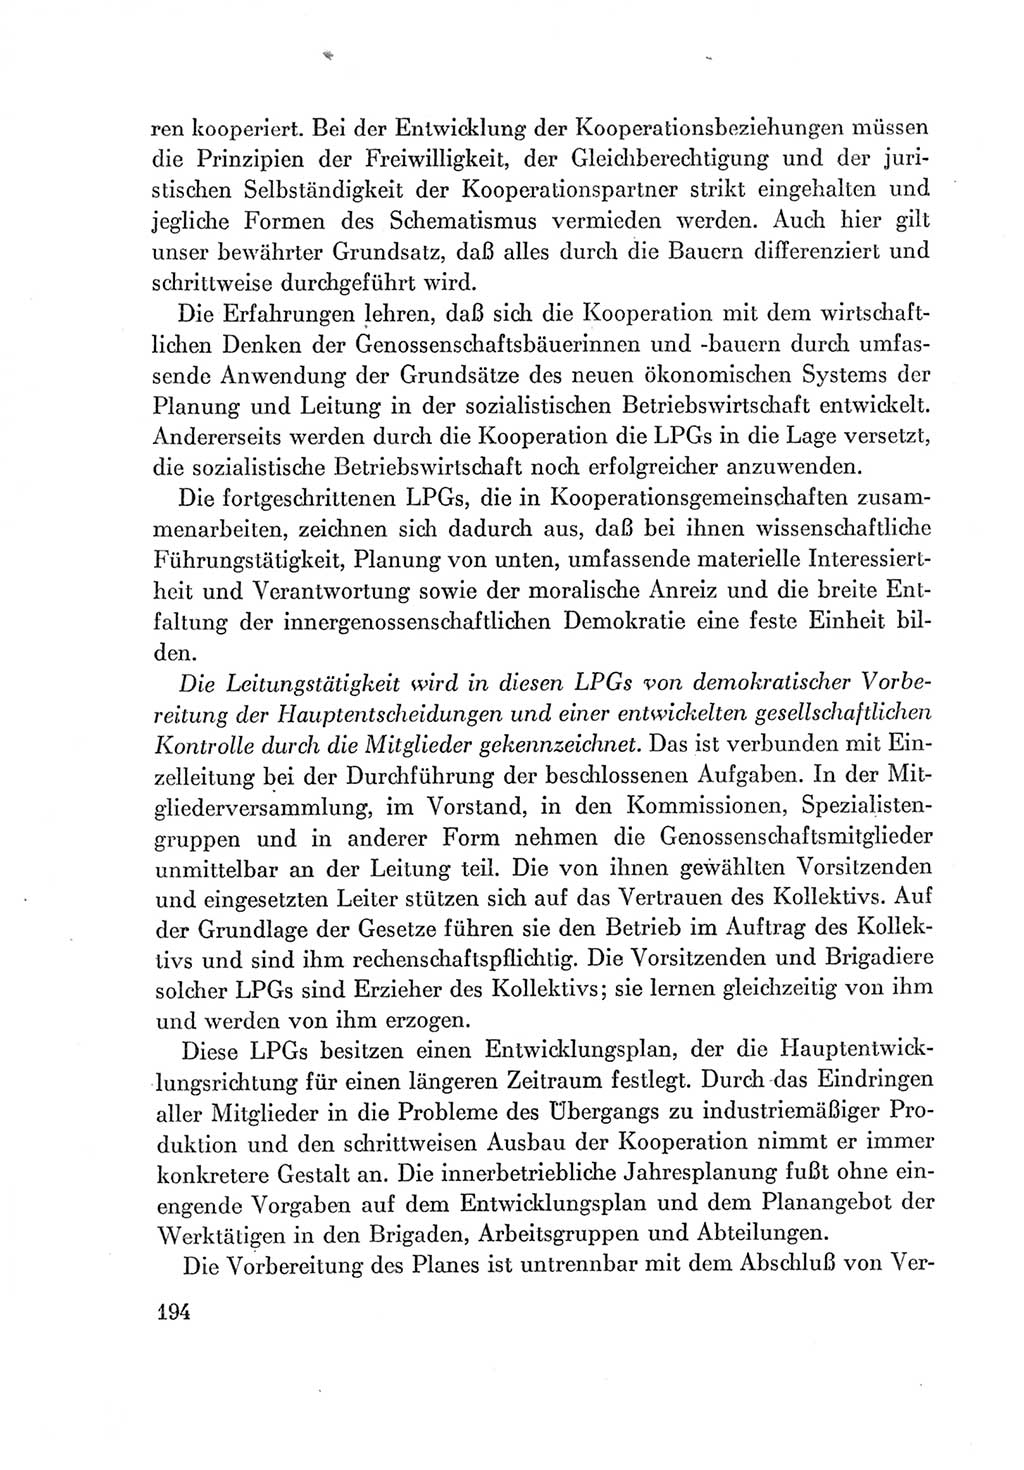 Protokoll der Verhandlungen des Ⅶ. Parteitages der Sozialistischen Einheitspartei Deutschlands (SED) [Deutsche Demokratische Republik (DDR)] 1967, Band Ⅰ, Seite 194 (Prot. Verh. Ⅶ. PT SED DDR 1967, Bd. Ⅰ, S. 194)